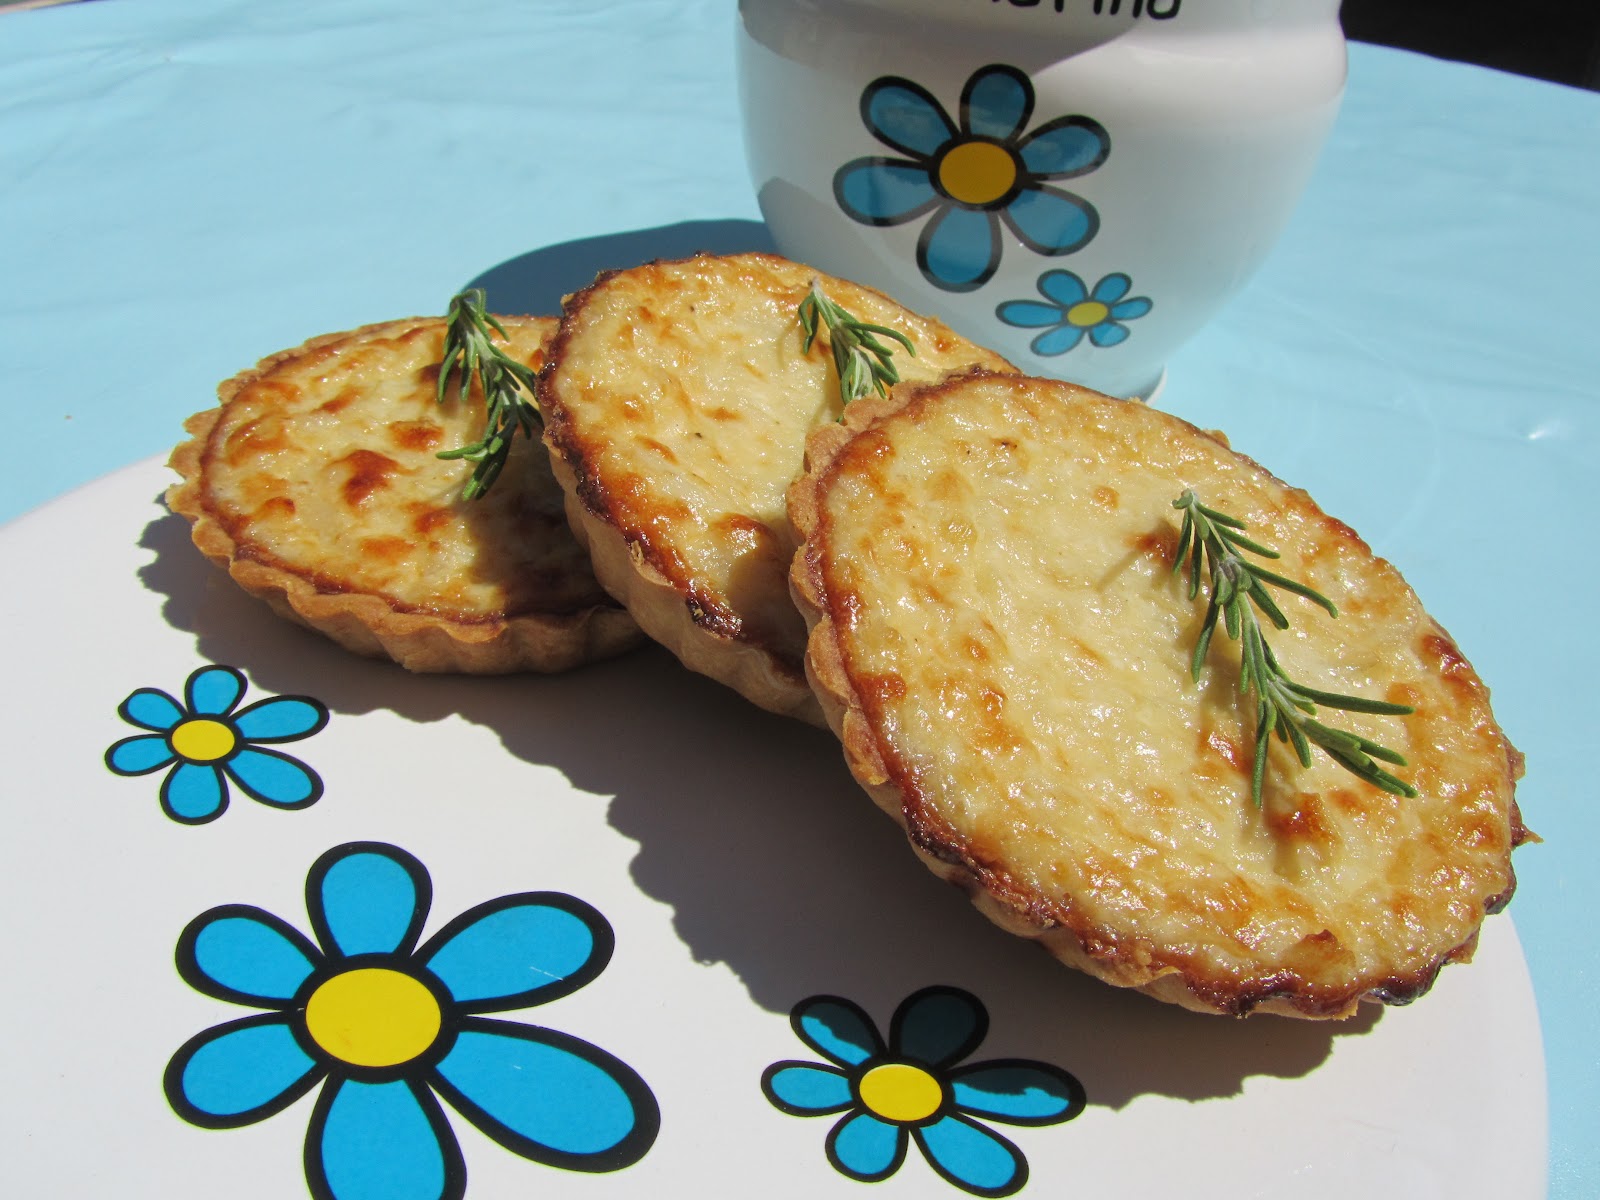 Tartaletas de cebolla y queso fresco